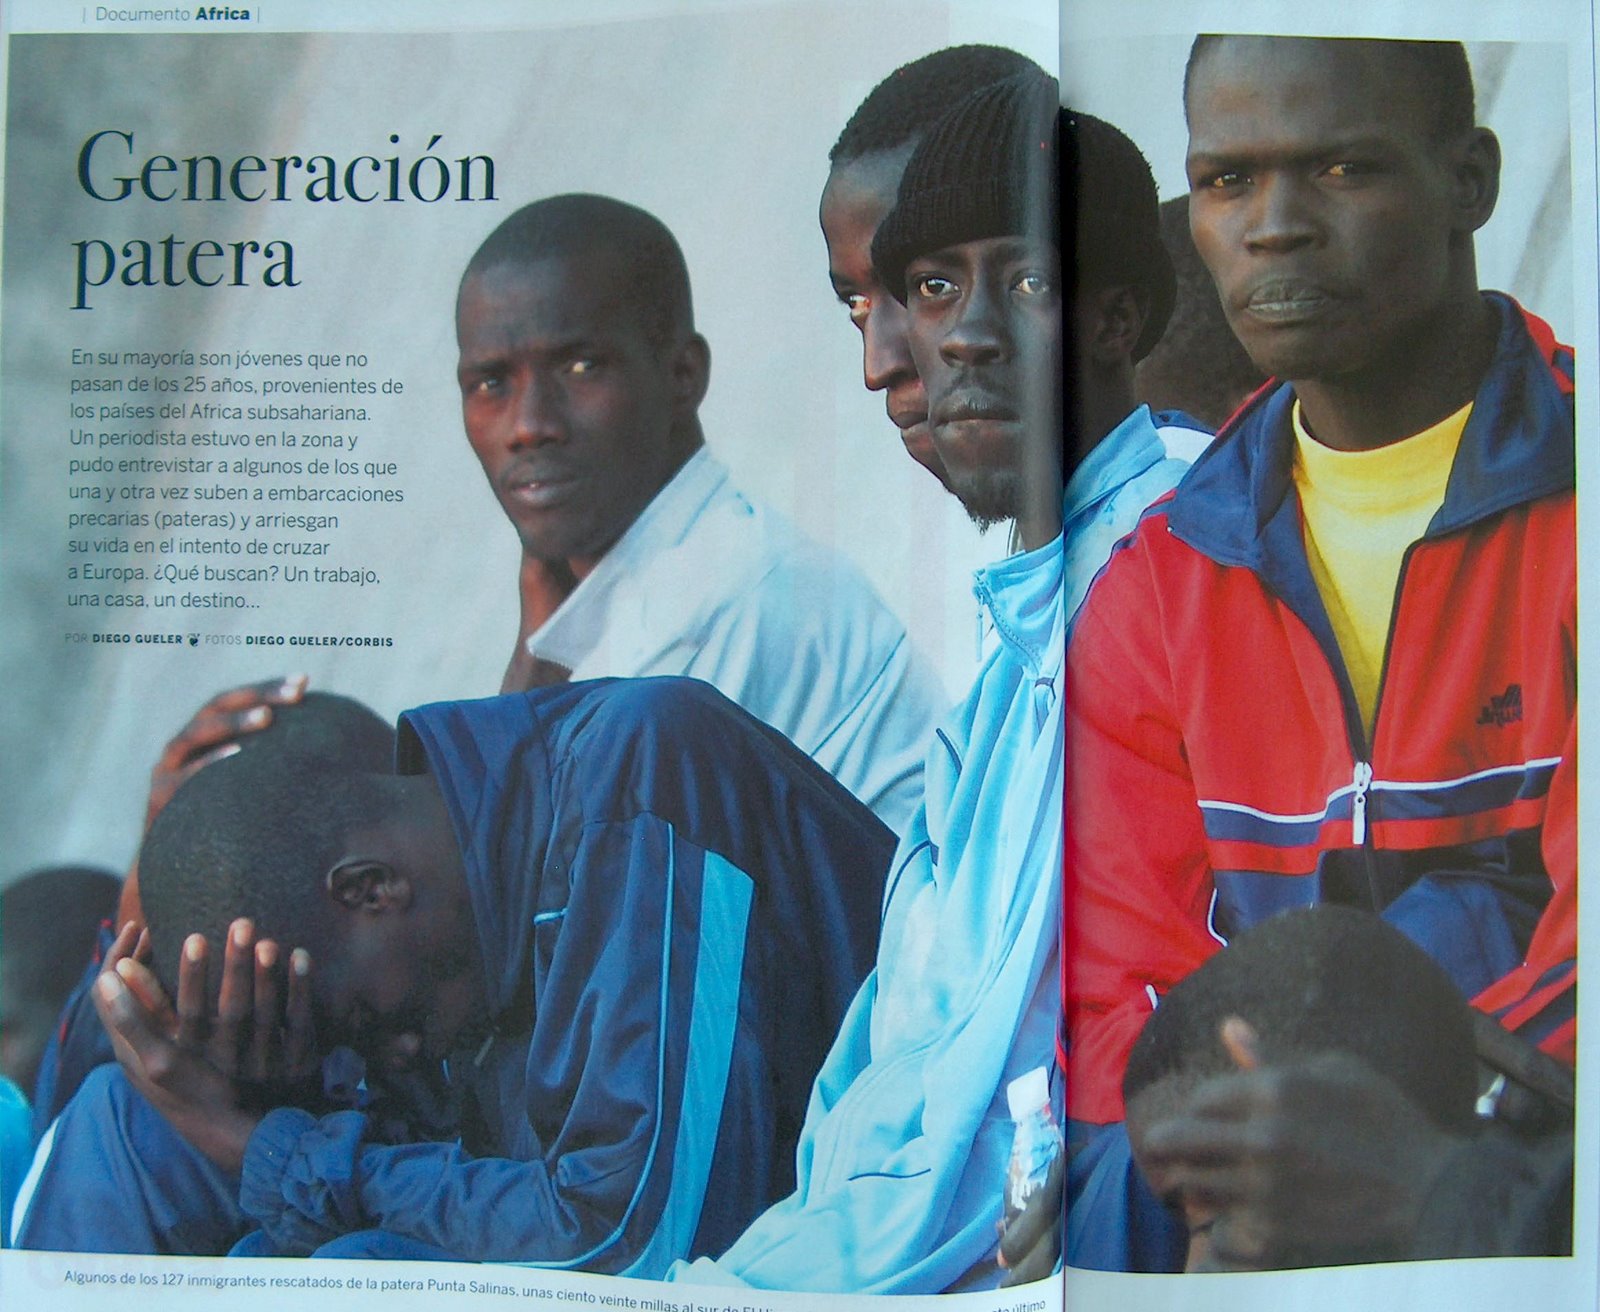 [Generación+patera+(La+Nación+Revista,+9+de+diciembre+de+2007)foto.jpg]